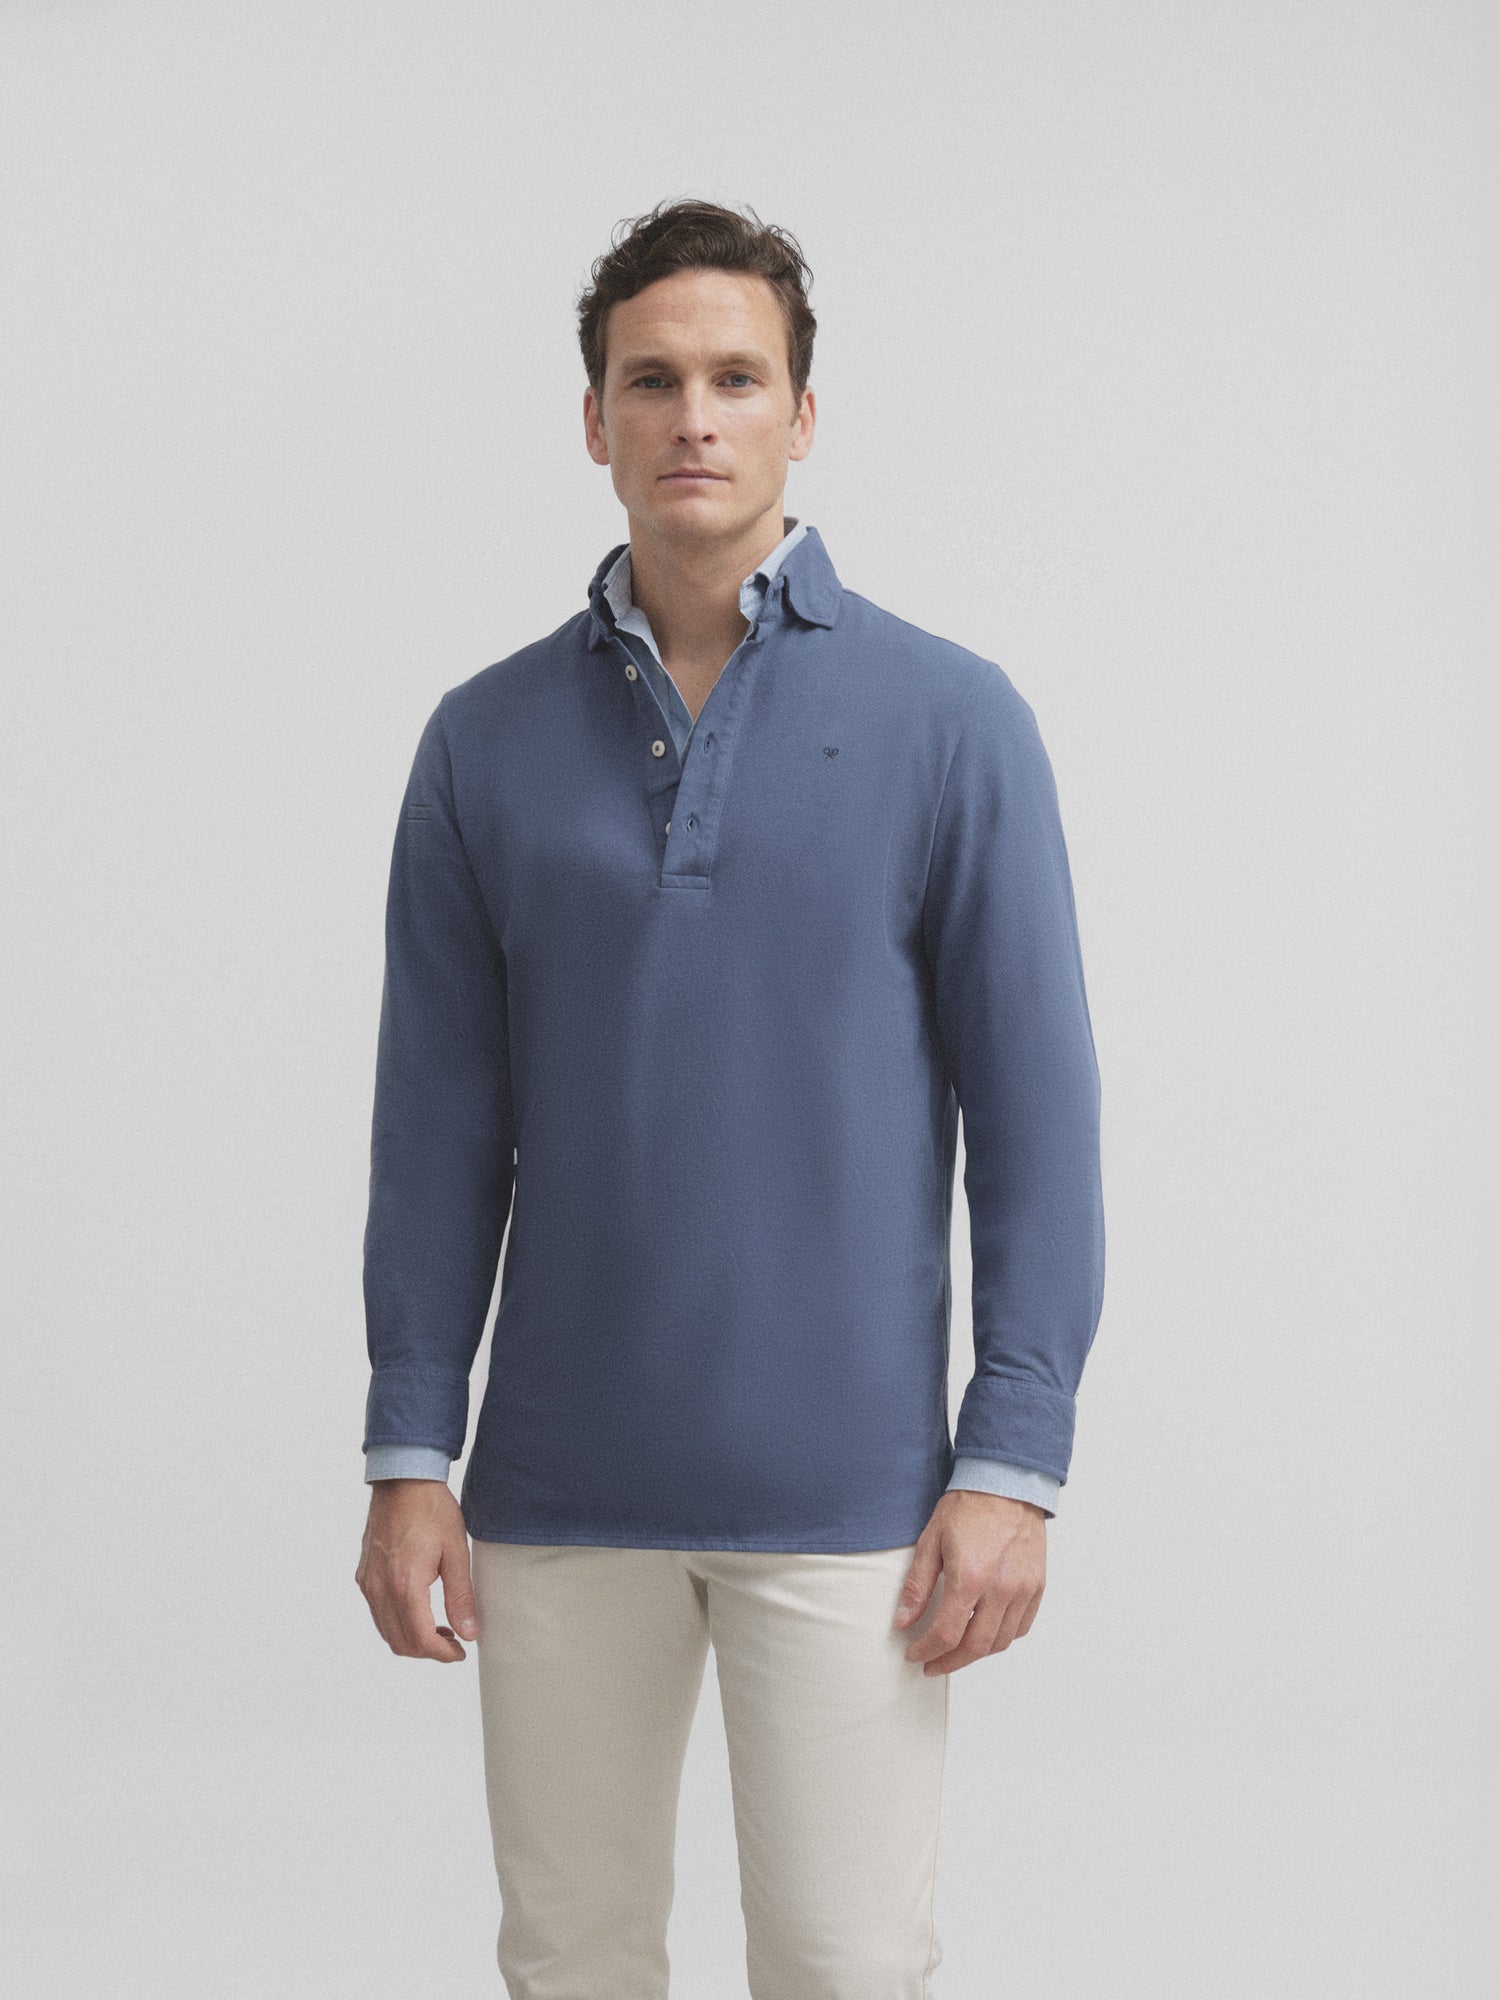 Medium blue plain long sleeve polo shirt